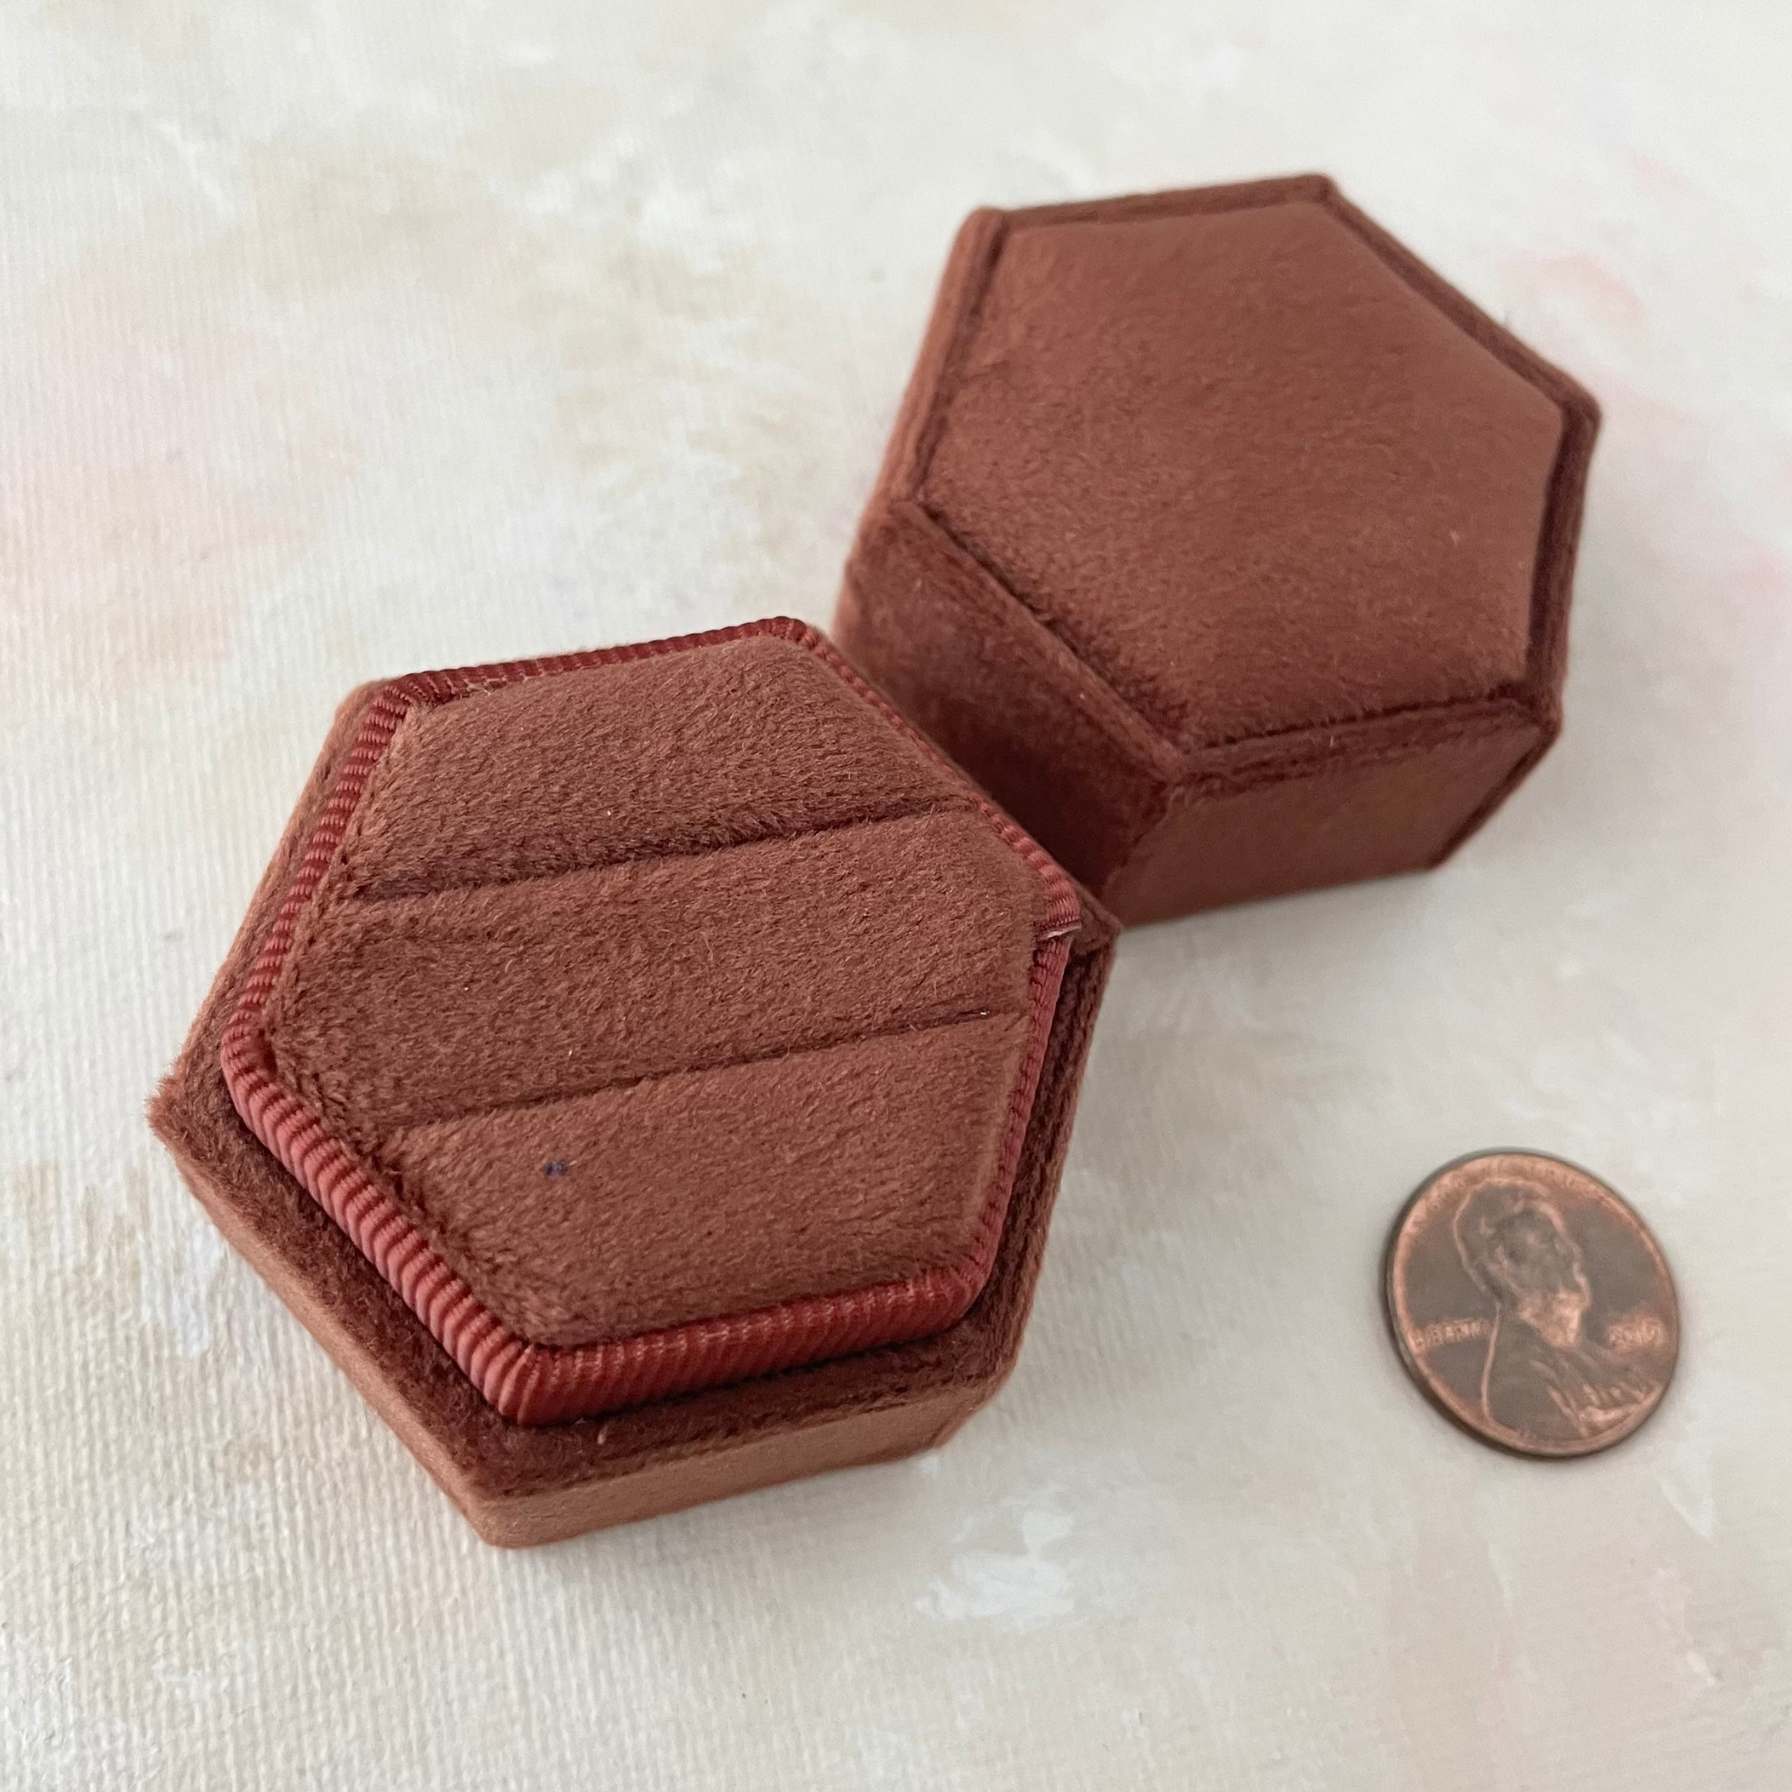 Rust Ring Box Hexagon